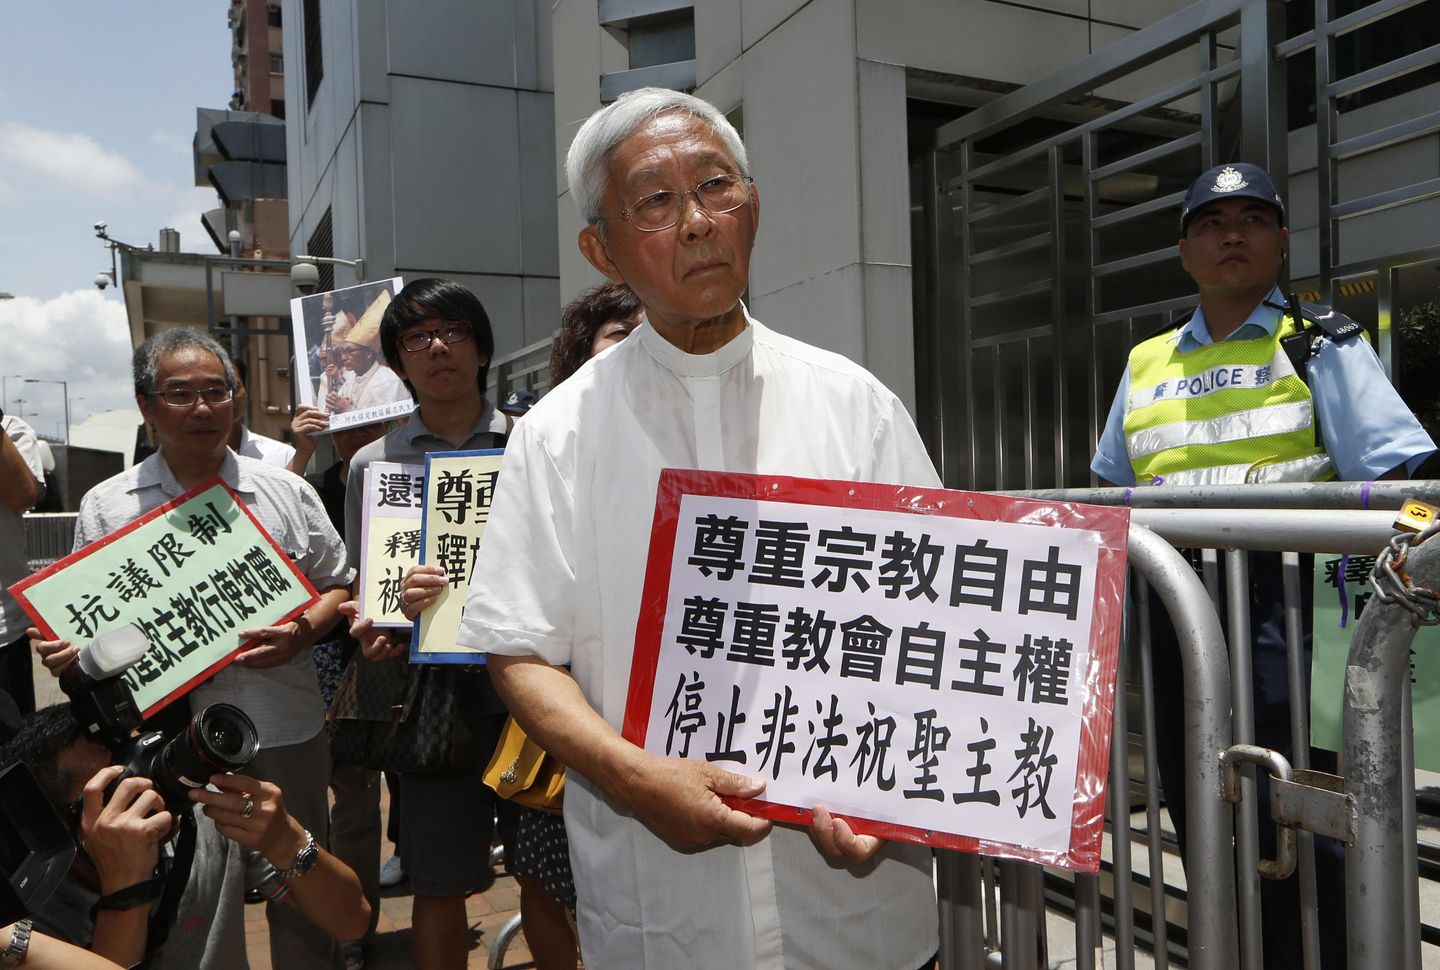 Hong Kong polisi emekli Katolik kardinali ulusal güvenlik suçlamalarıyla tutukladı, kefaletle serbest bıraktı